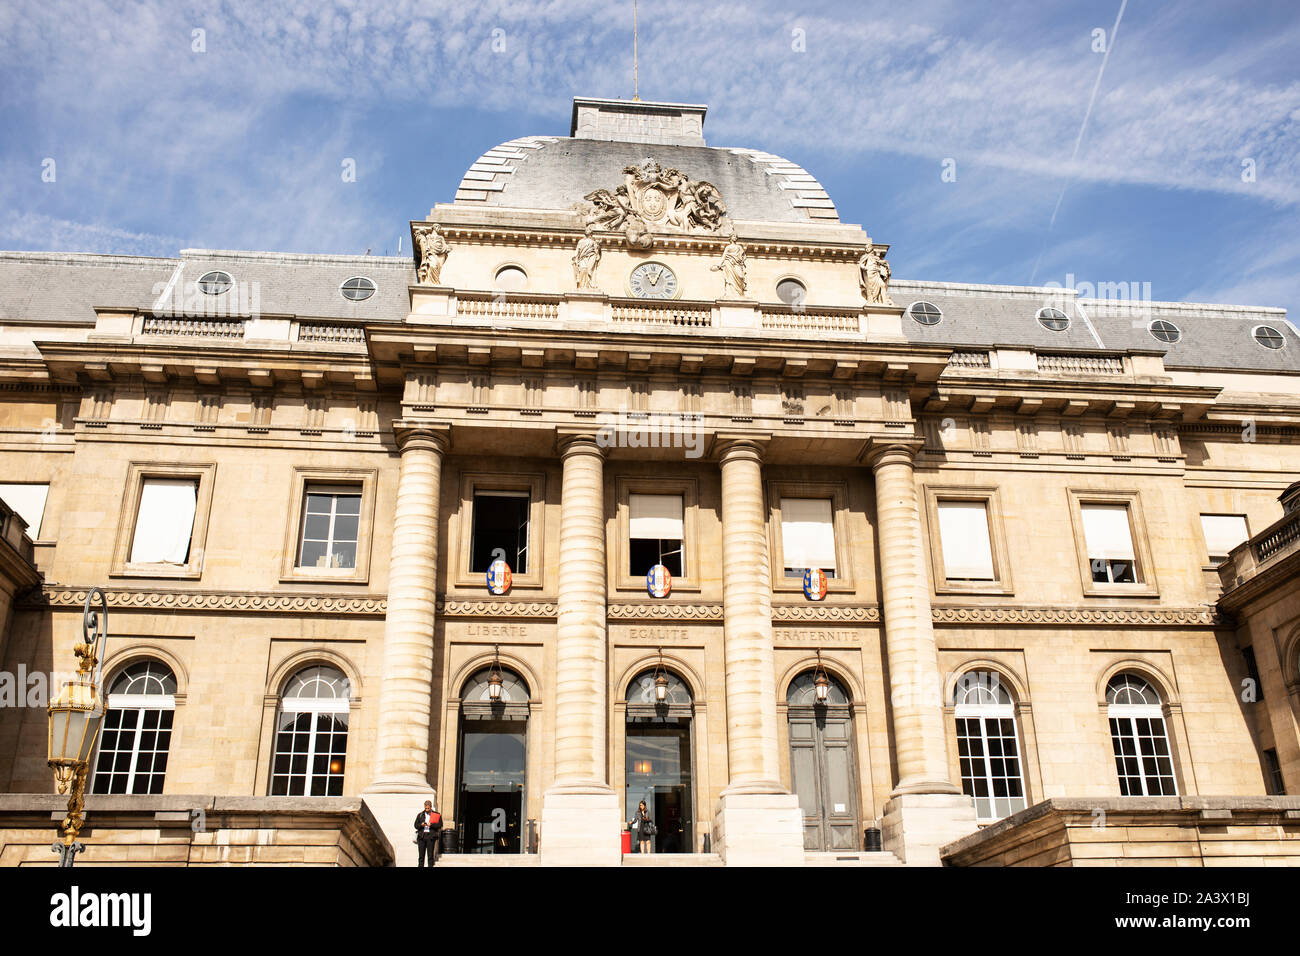 Die Fassade des Palais de Justice, oder Stadt Gerichtsgebäude, auf der Ile de la Cité in Paris, Frankreich. Stockfoto